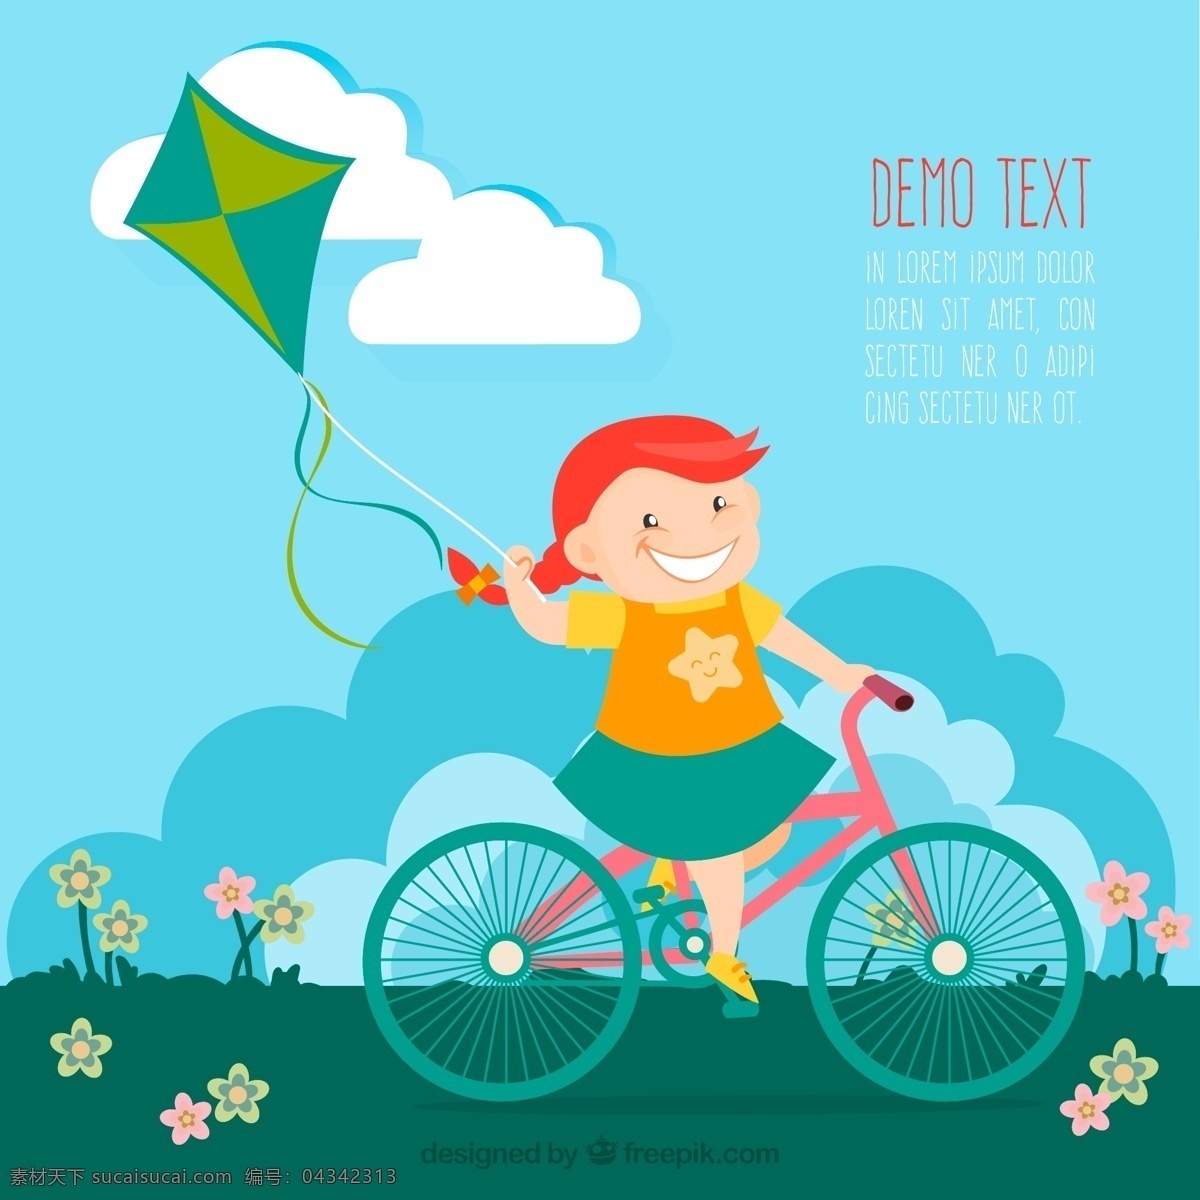 骑 单车 放风筝 女孩 矢量图 骑单车 可爱 彩色 青色 天蓝色